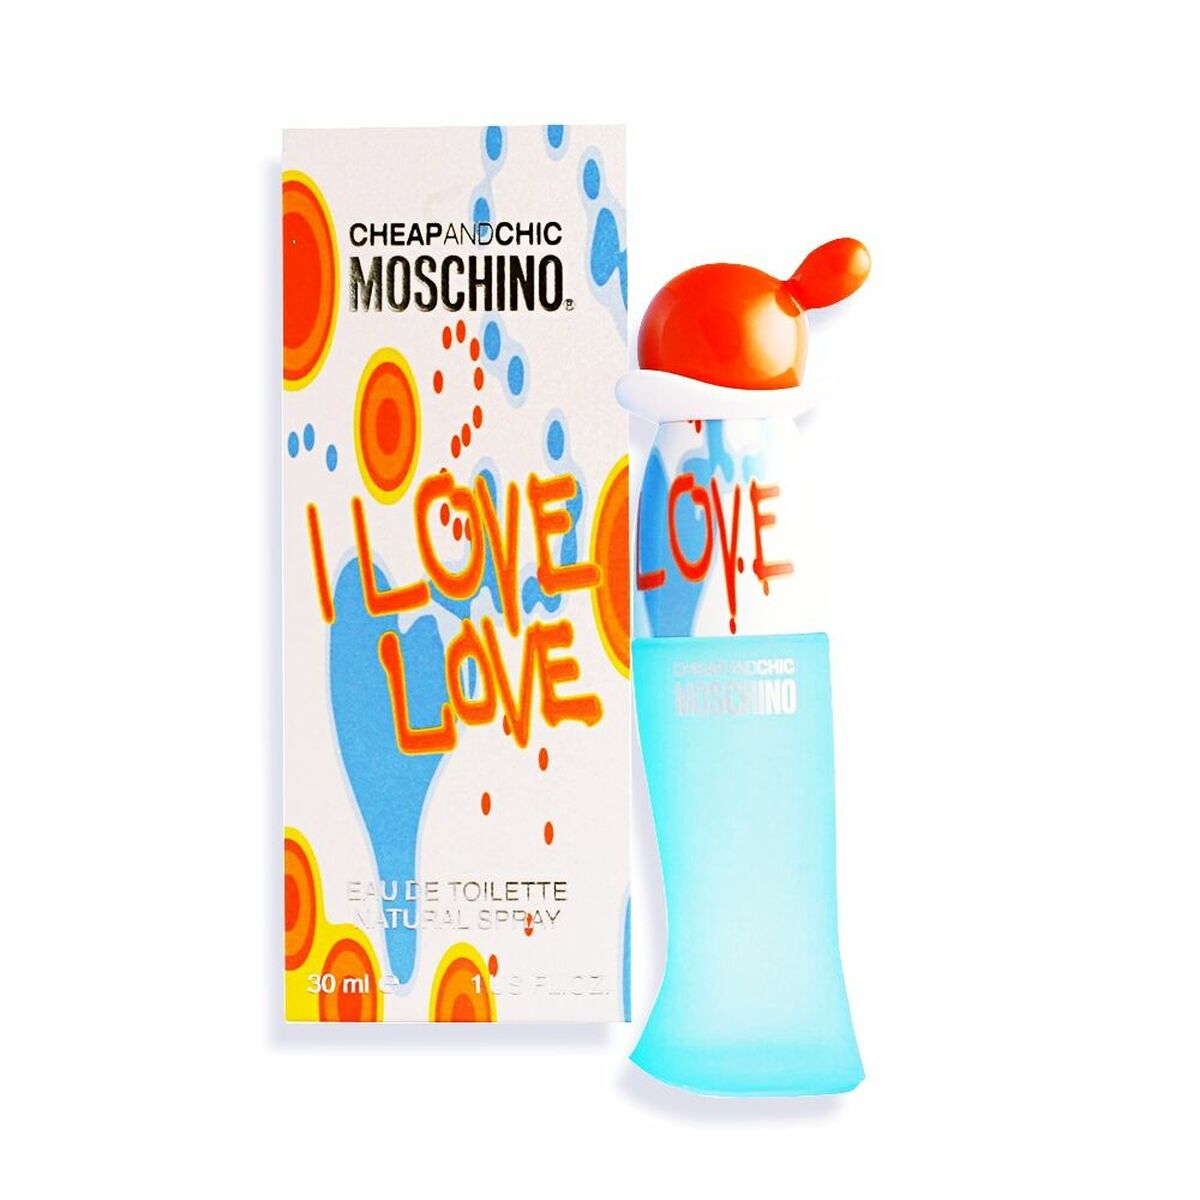 Kobiet Perfume Moschino Tanie i Chic I Love Edt 30 ml